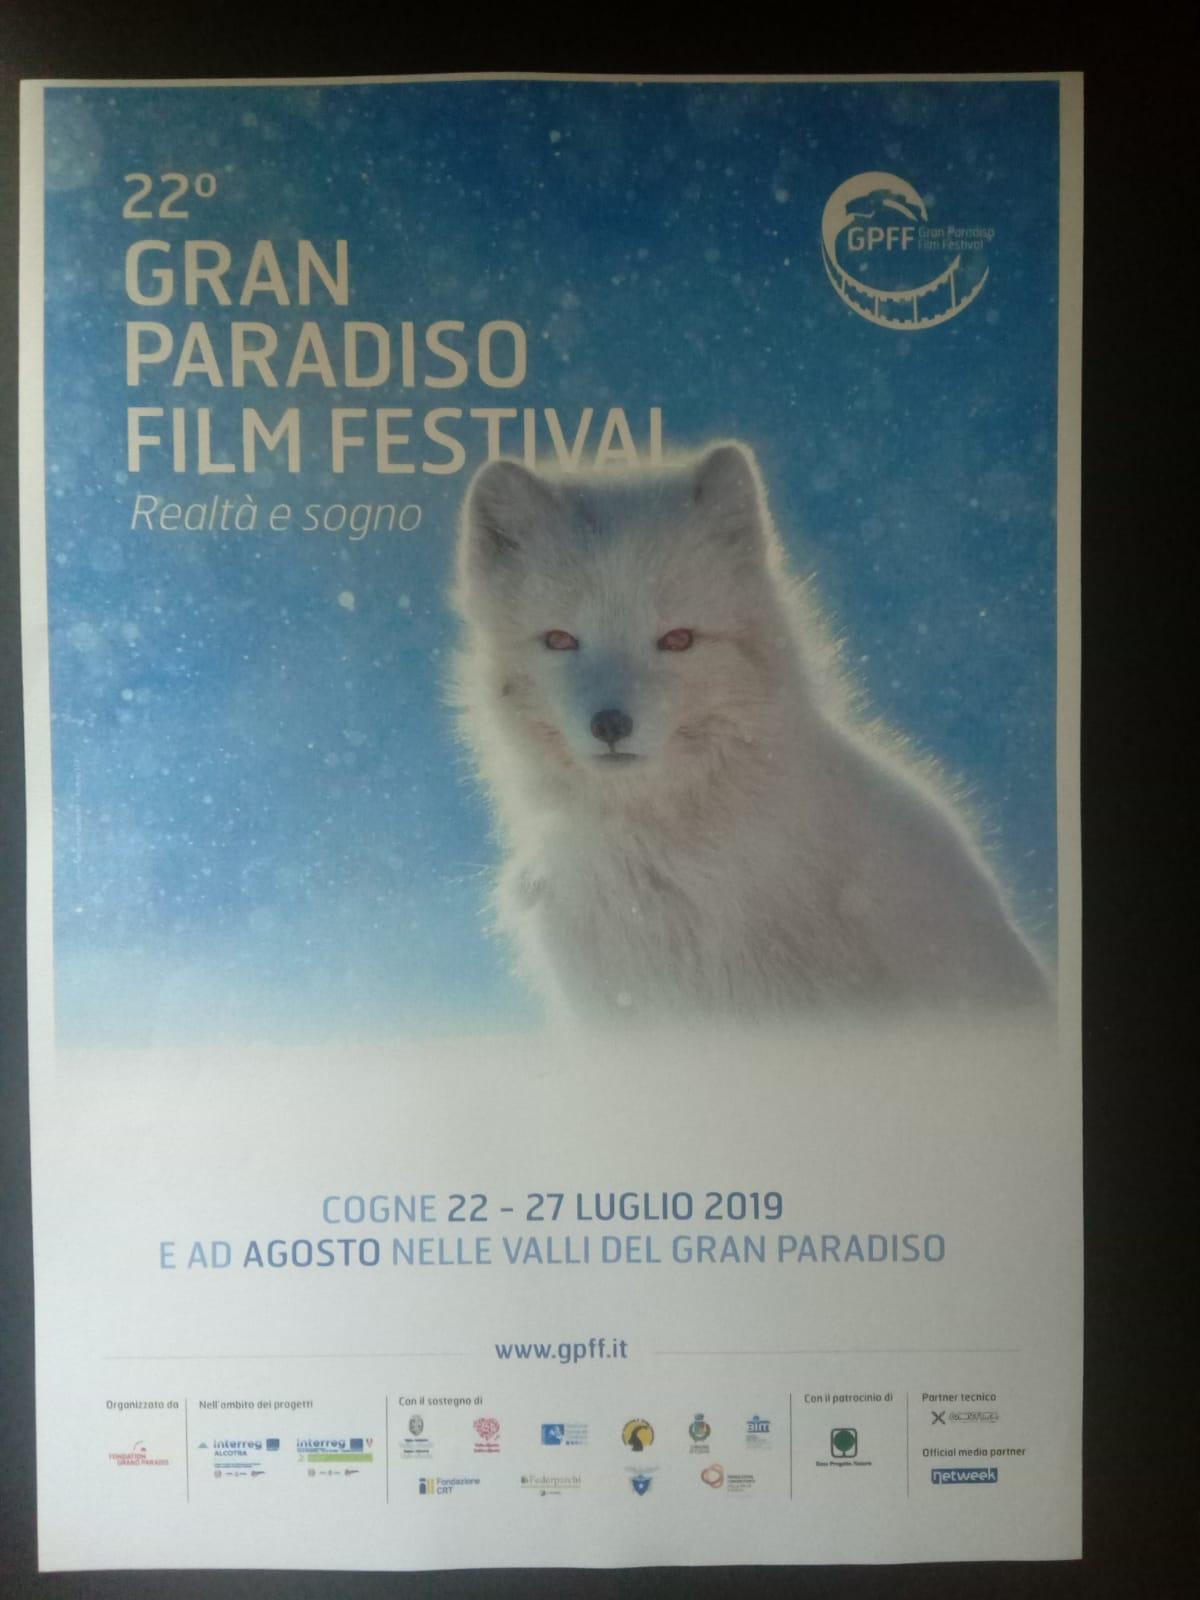 Gran Paradiso Film Festival: realtà e sogno il tema della 22a edizione